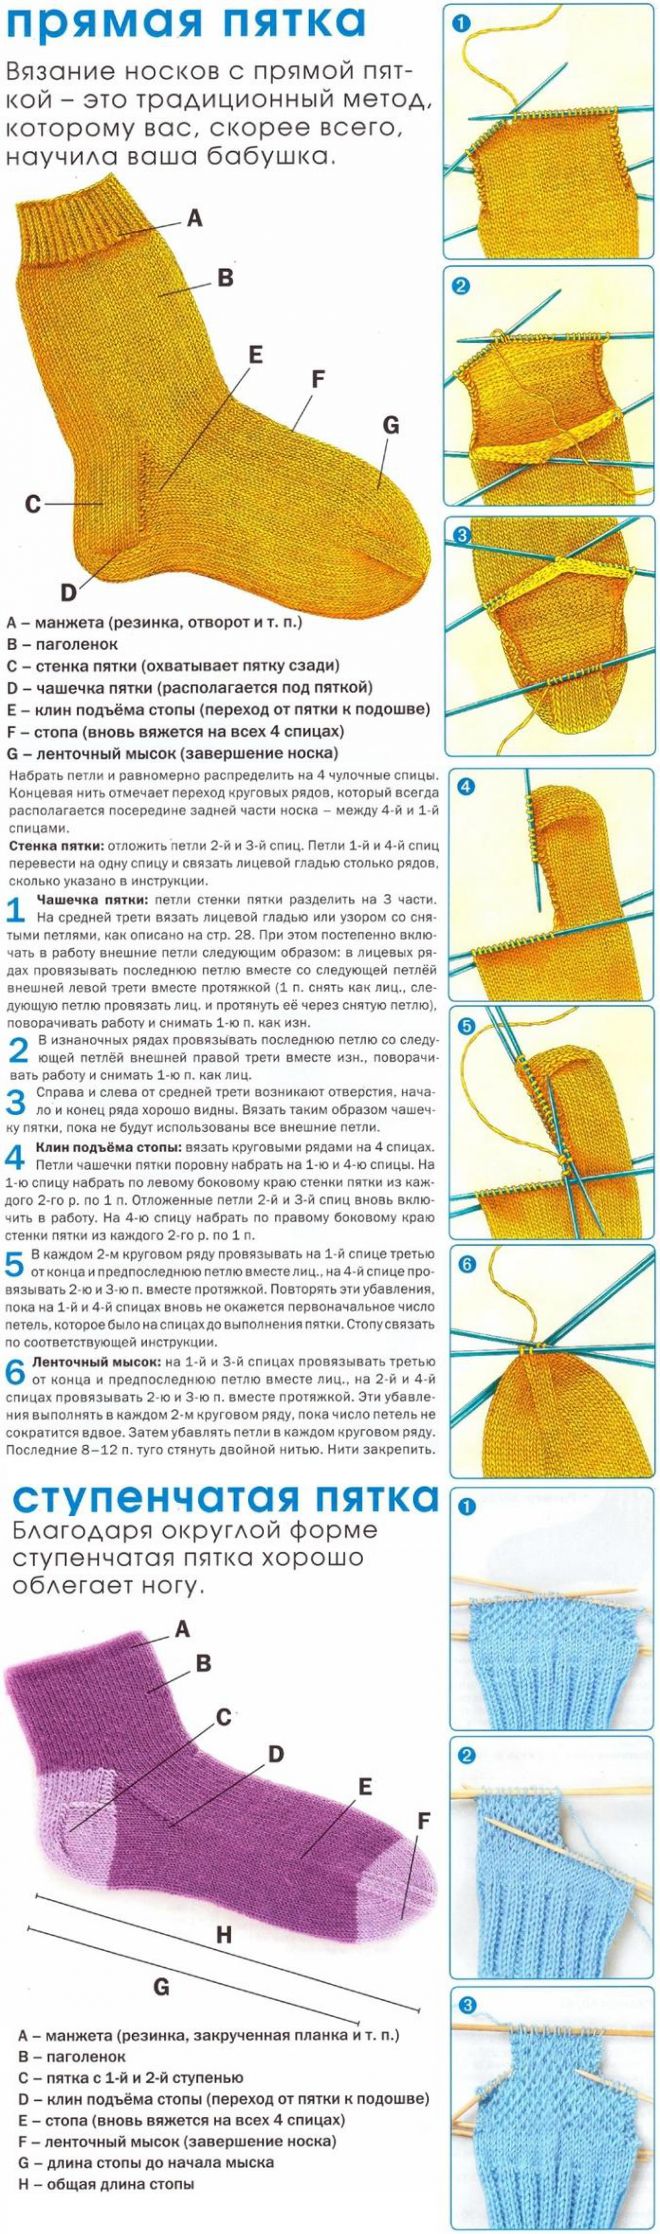 Инструкция, как связать носки спицами - уроки и основы мастерства от экспертов (115 фото)